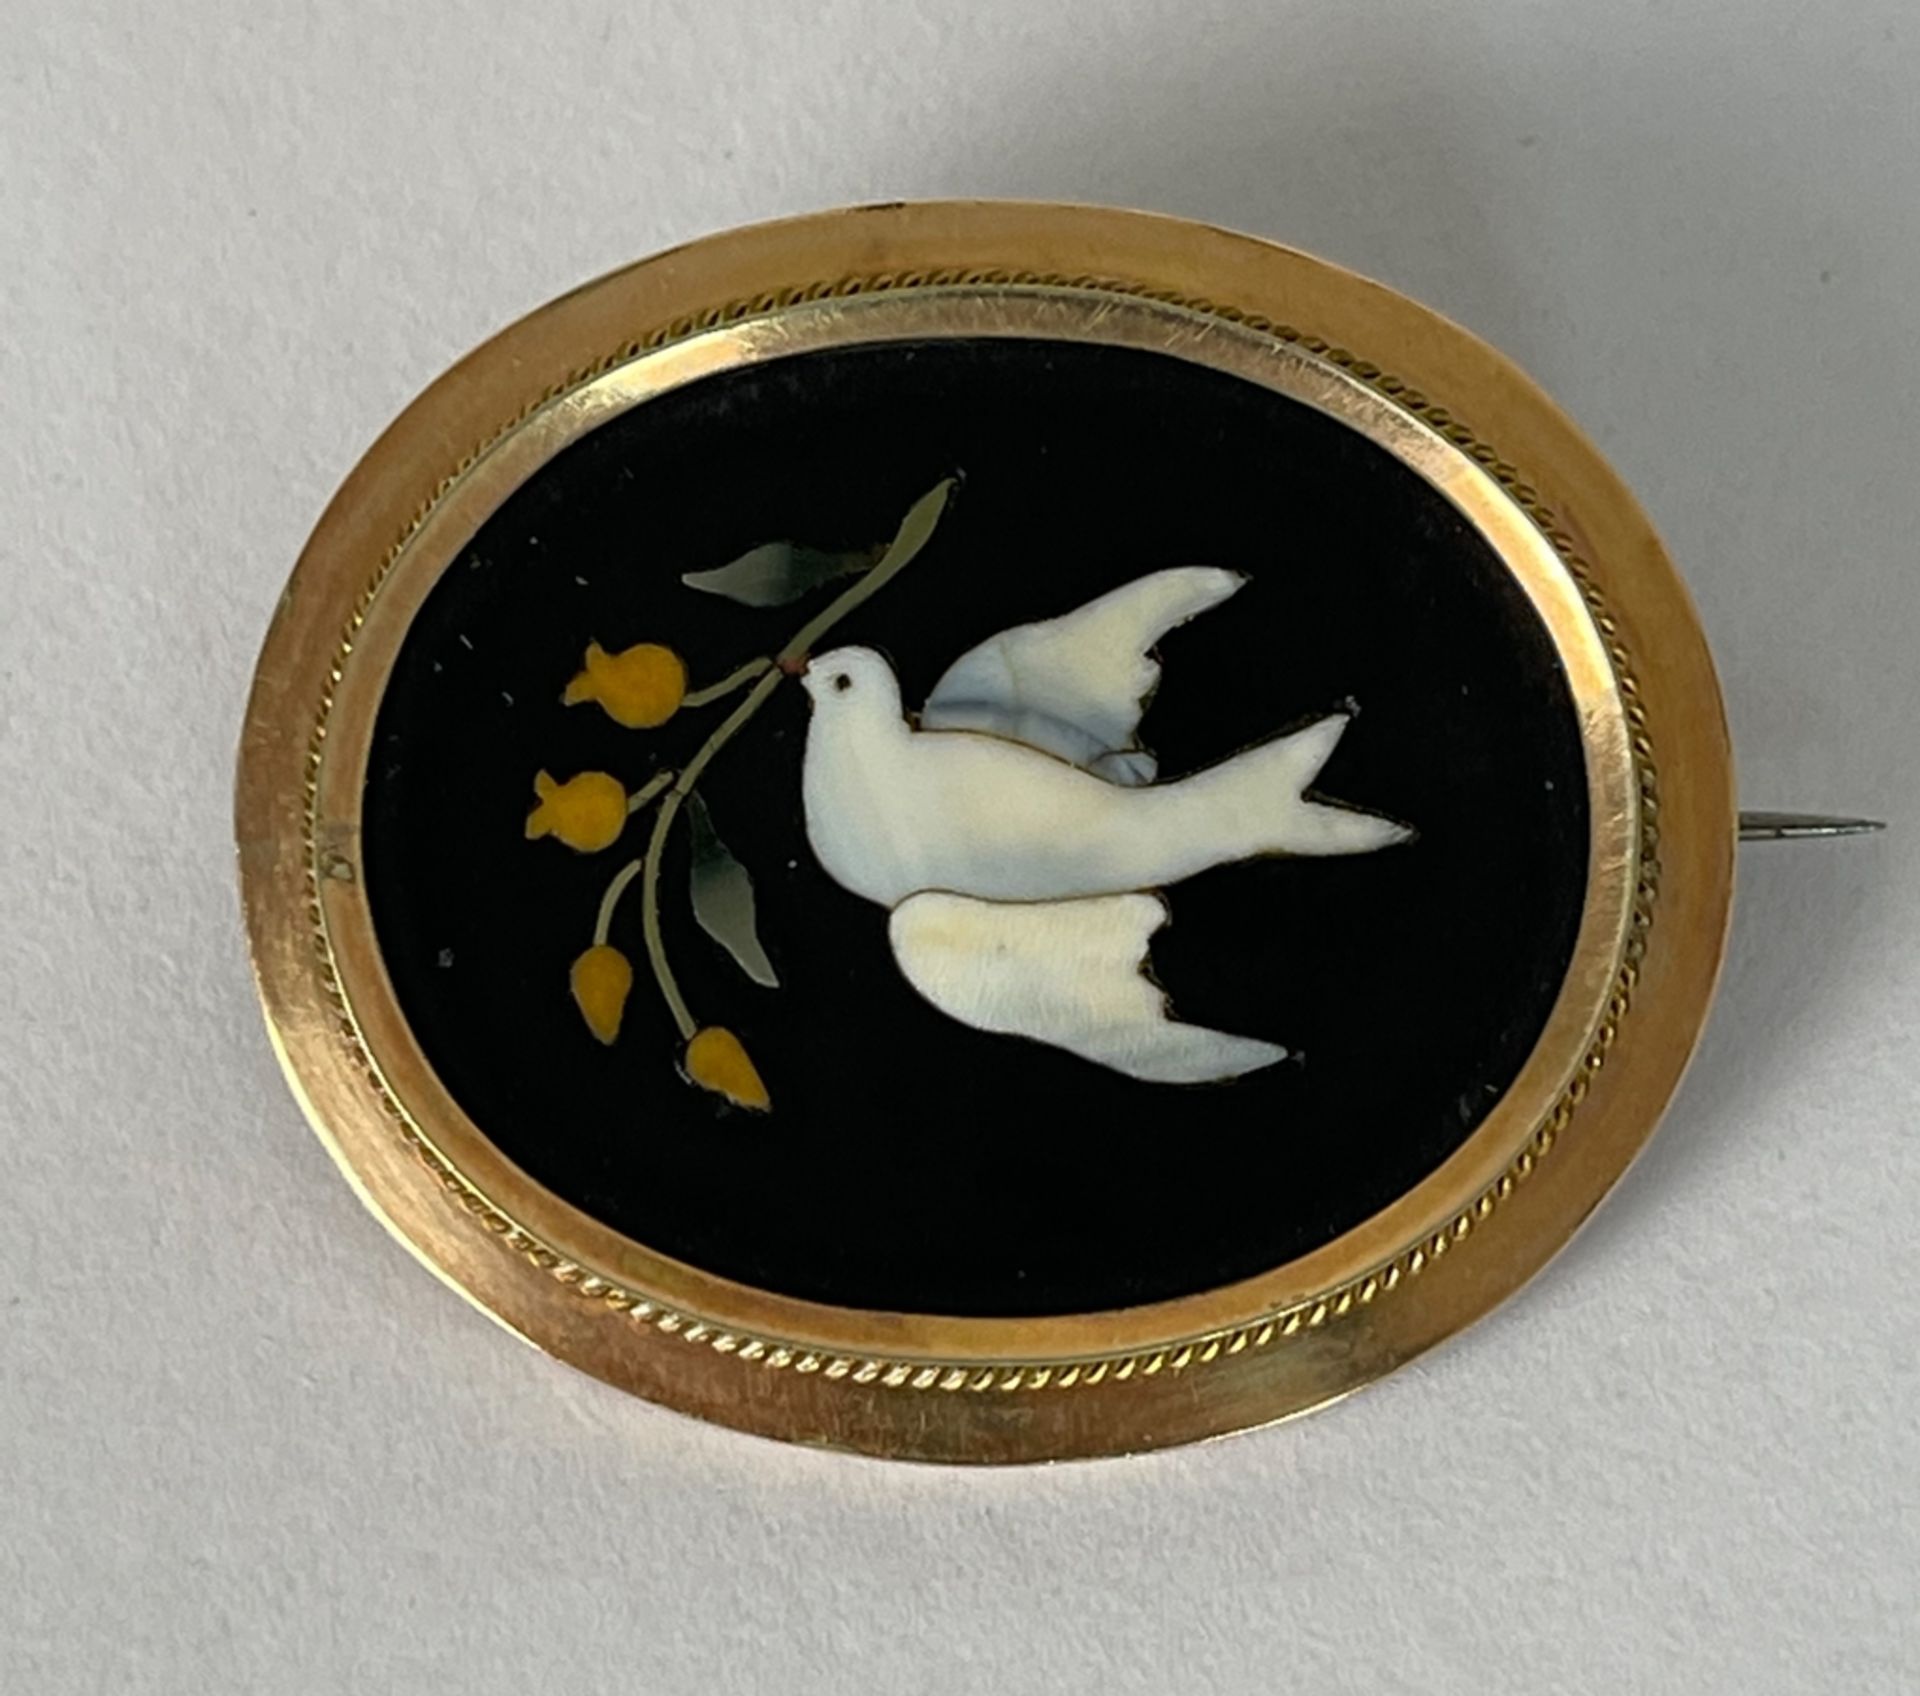 Hochwertige Pietra Dura Brosche "Weiße Taube" in Echtgoldfassung